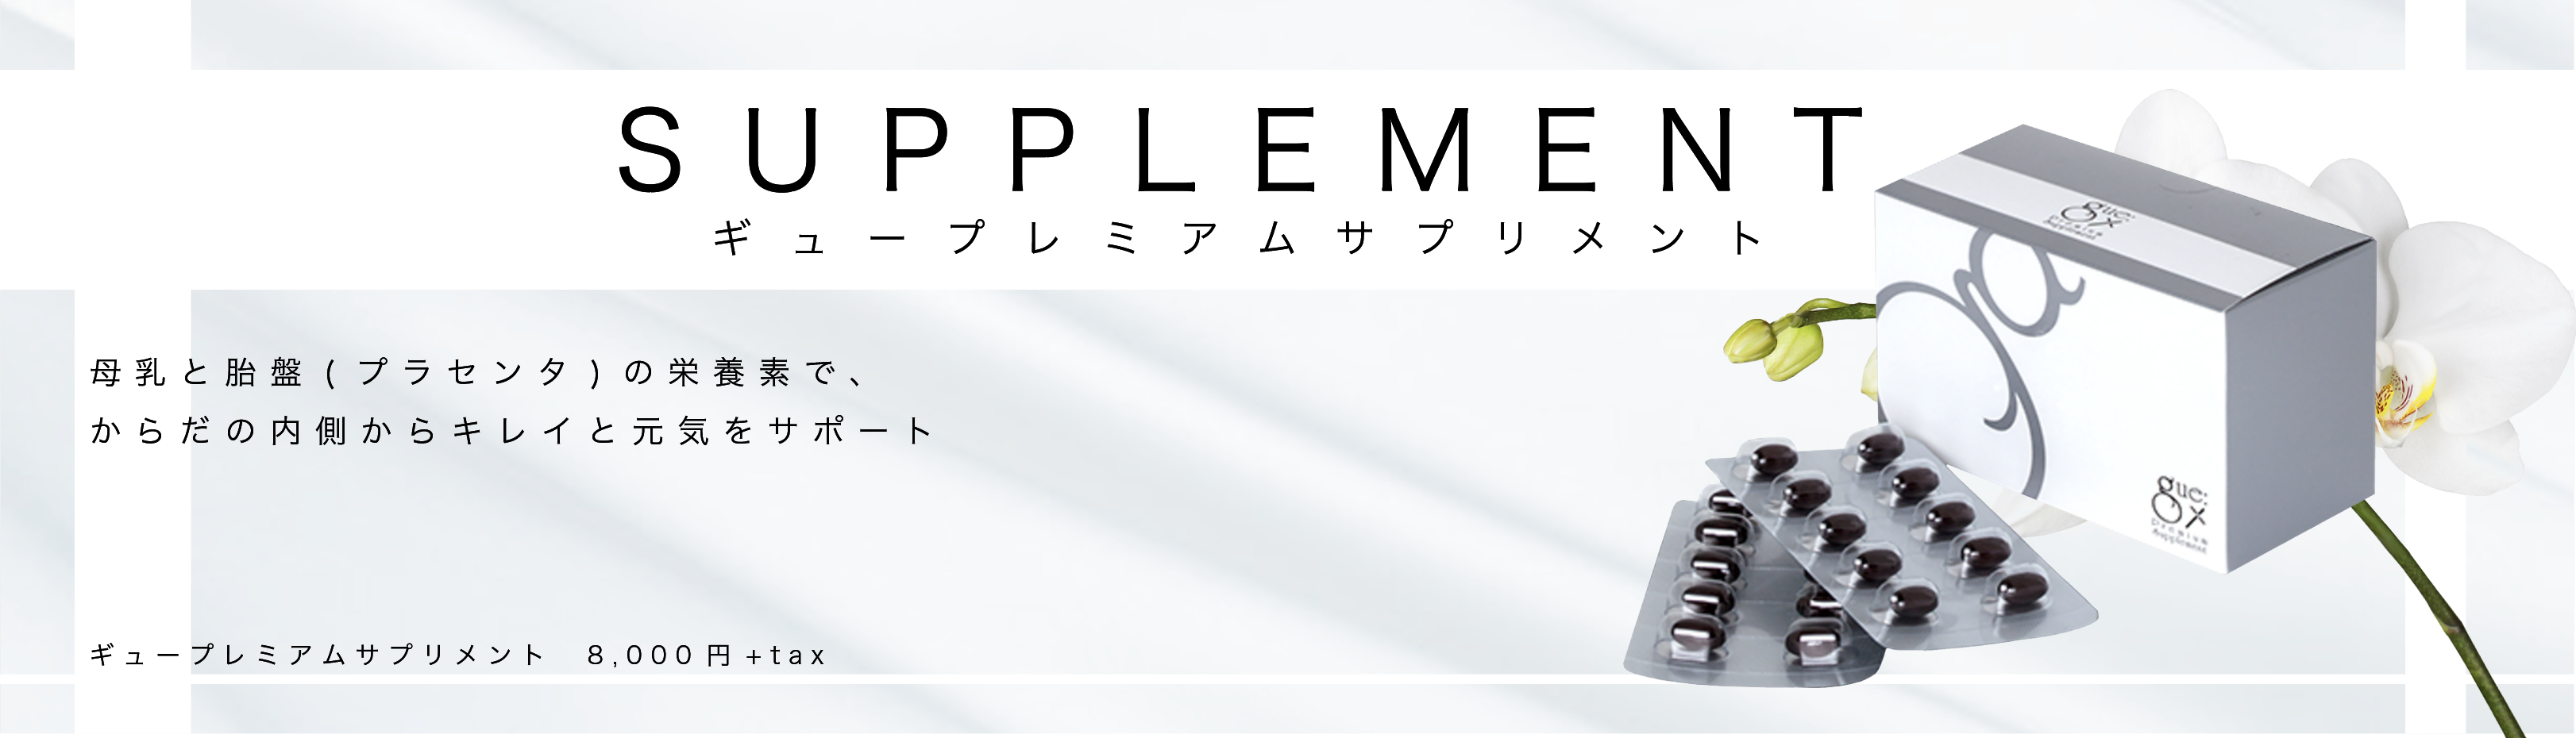 ギュープレミアムサプリメント - アイプラス ギュープレミアムシリーズ通販